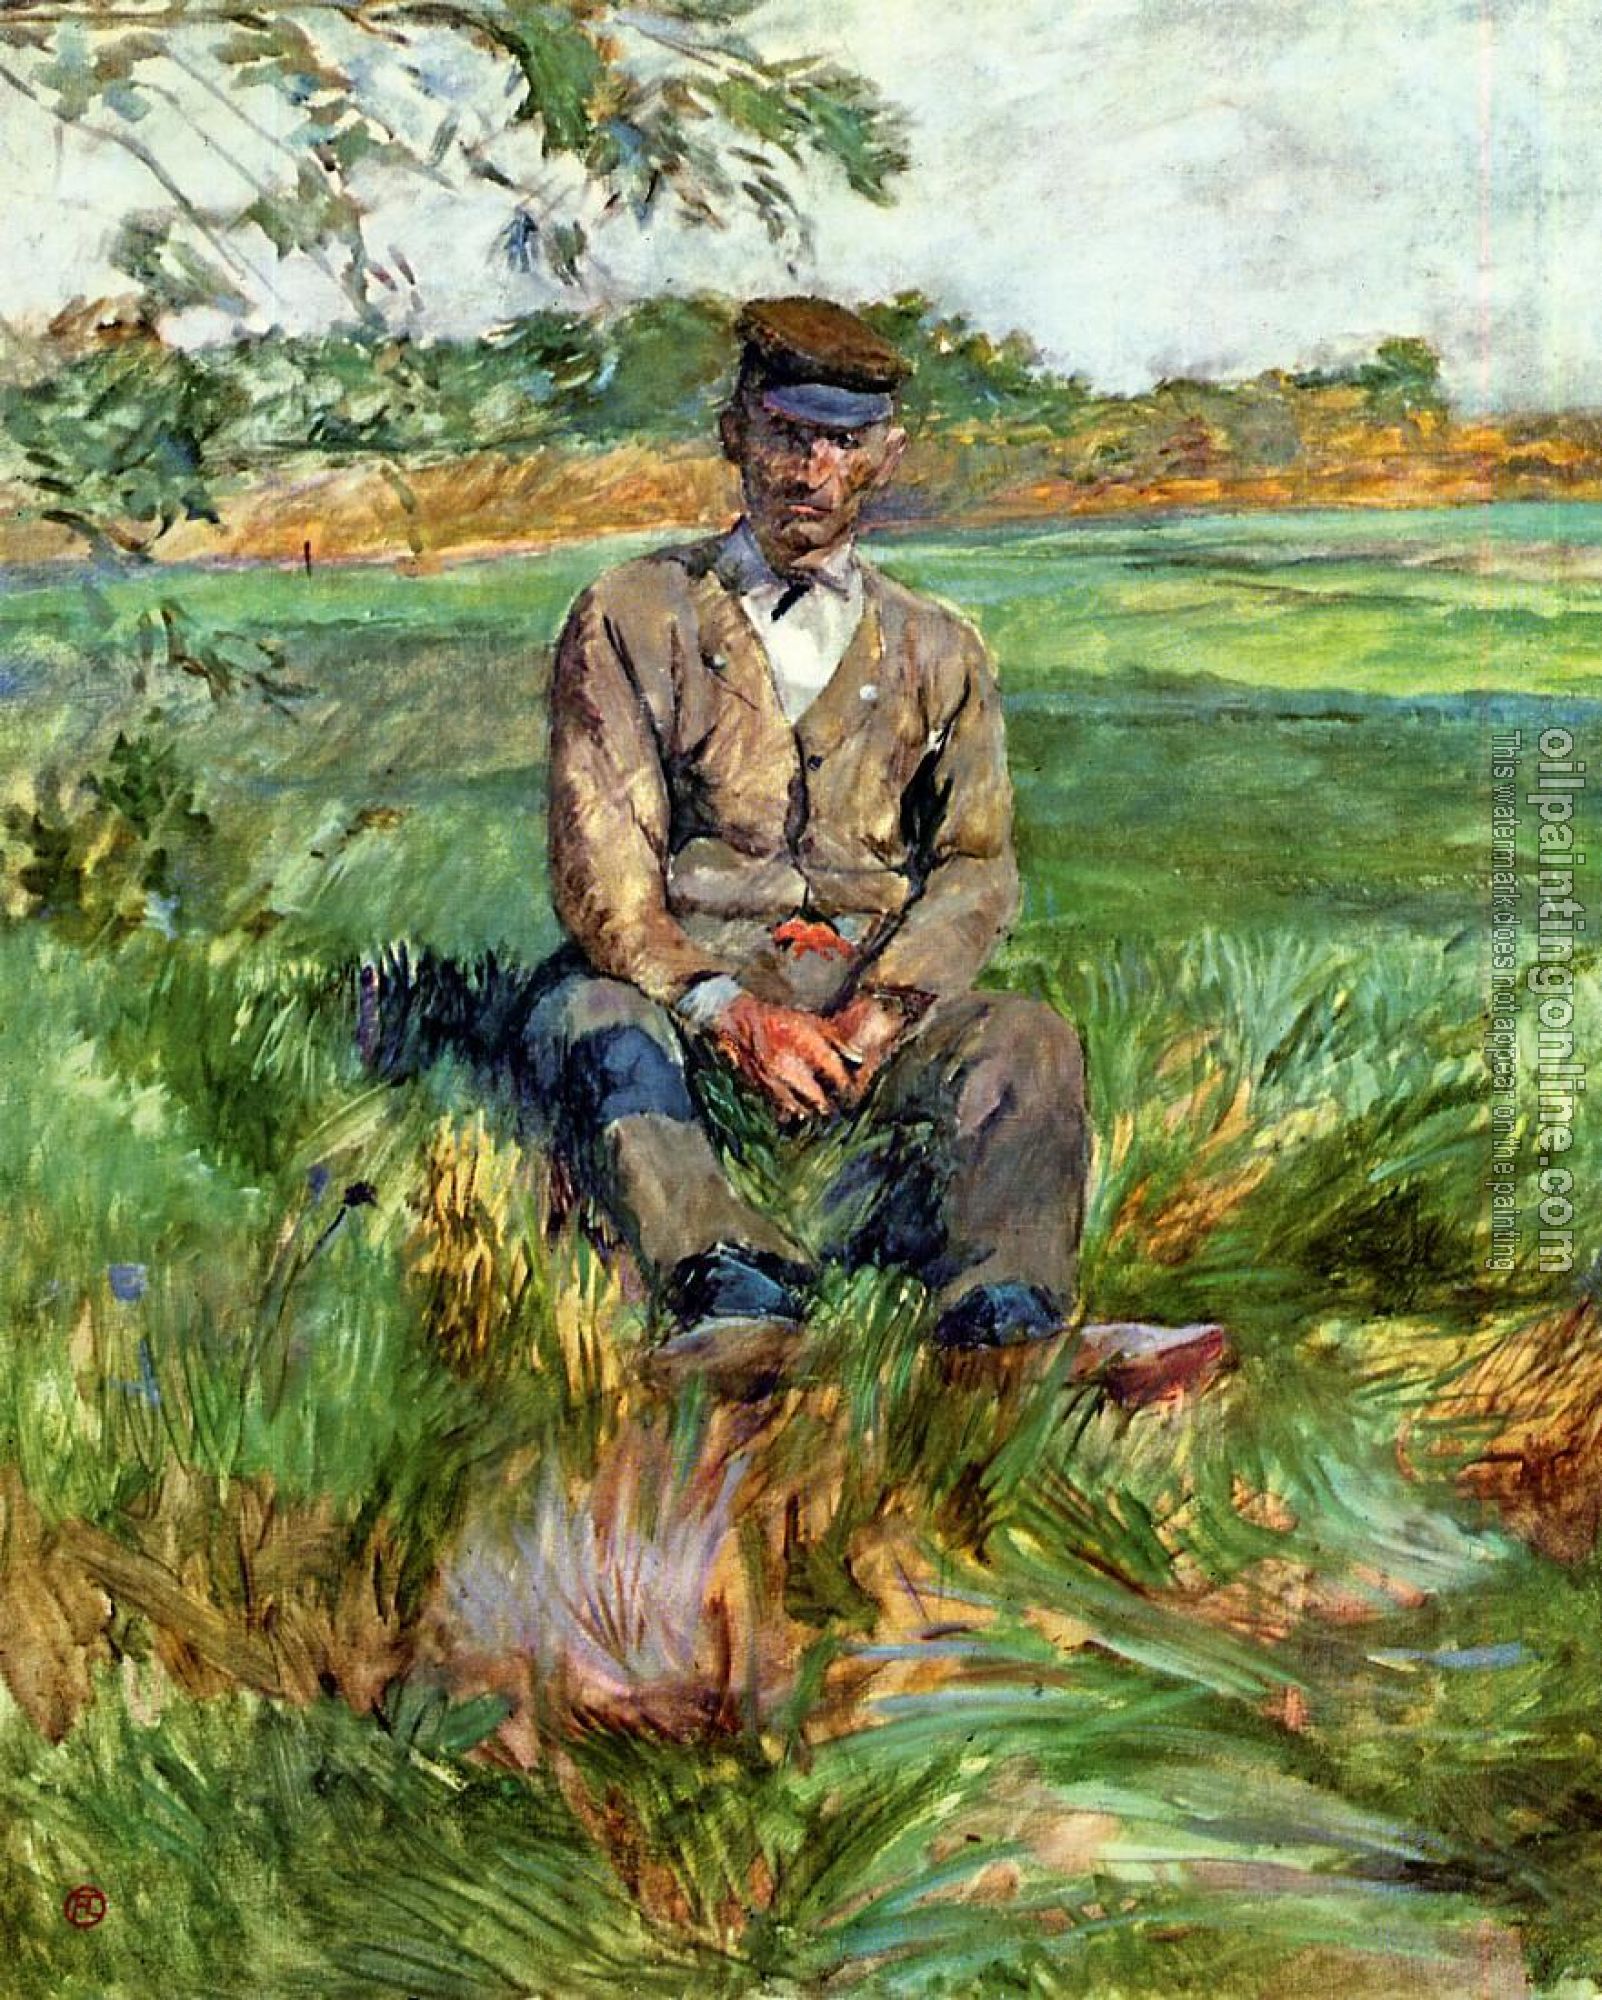 Toulouse-Lautrec, Henri de - A Laborer at Celeyran